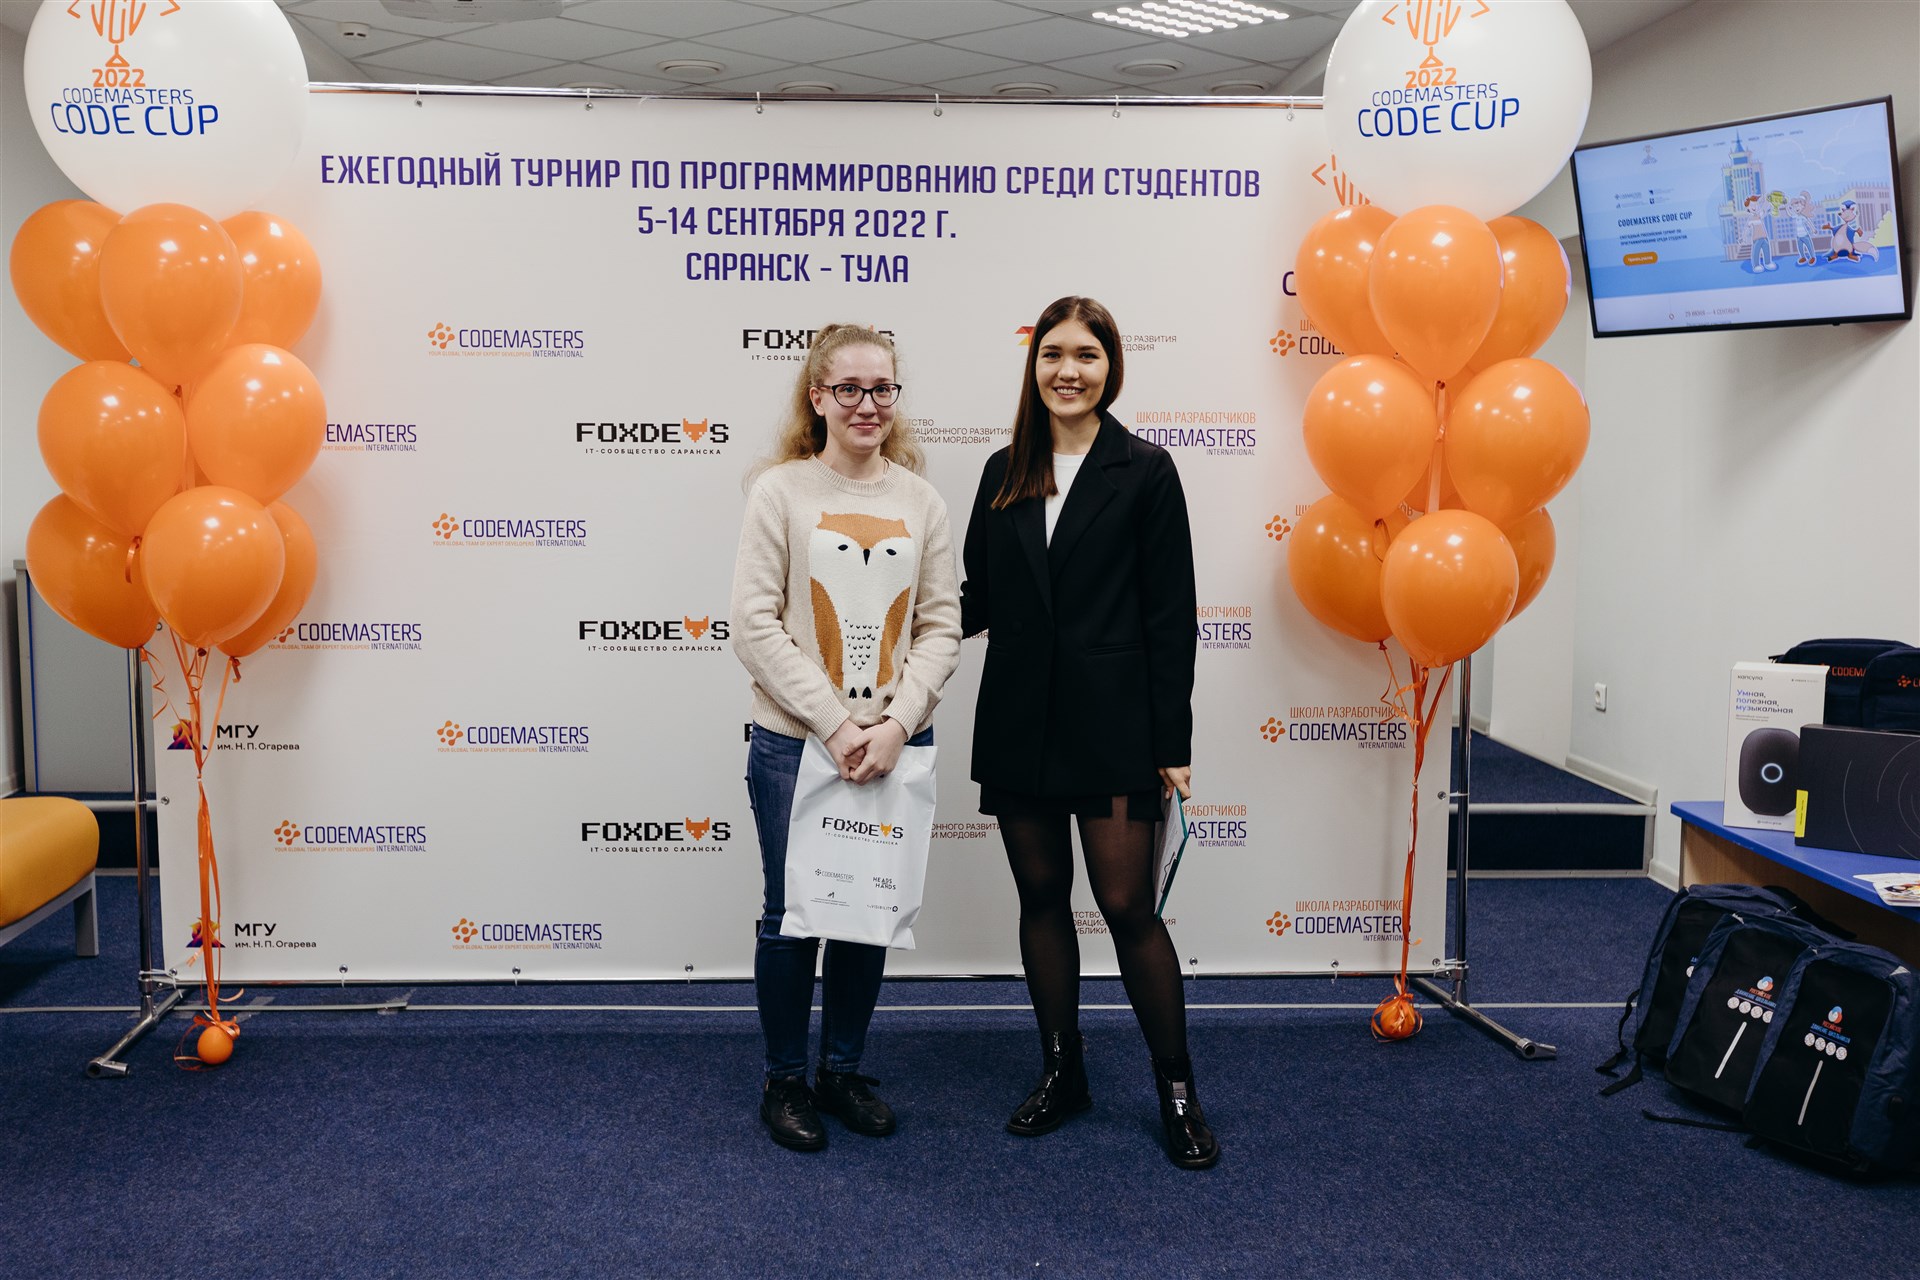 Codemasters Code Cup Саранск 2022 - 23